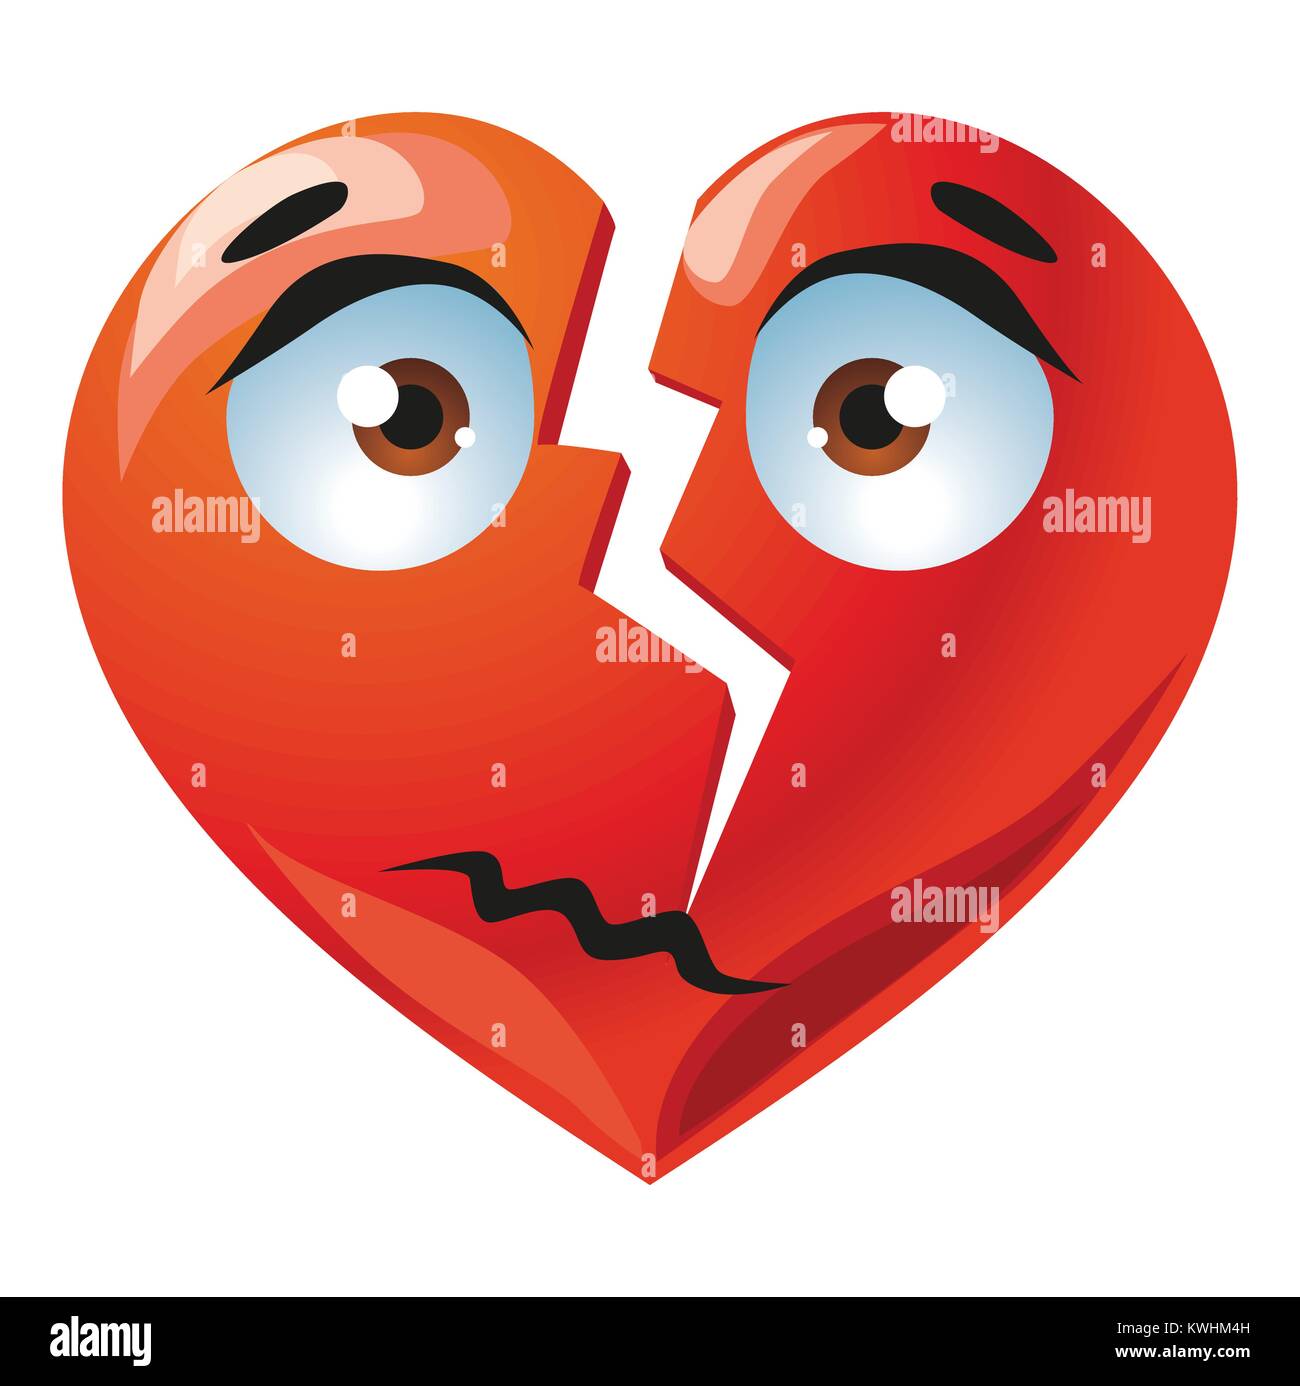 Sad broken cute red heart cartoon illustration Stock Vector